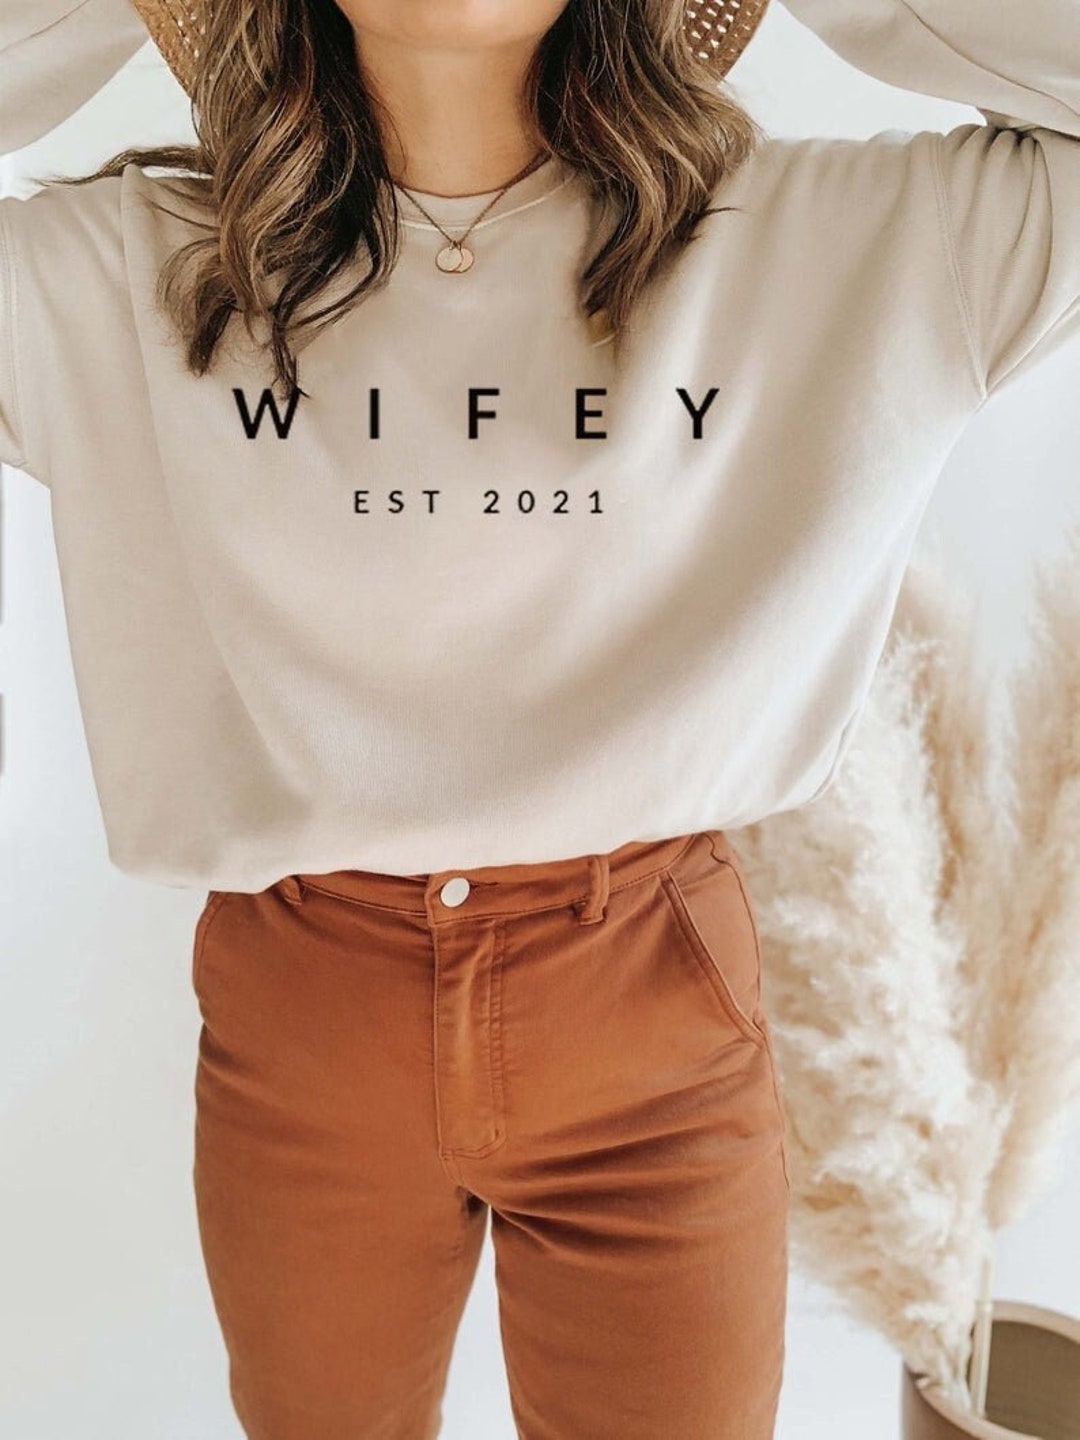 Wifey Est 2021 Sweatshirt Personalization Mrs Sweat Wifey - Etsy